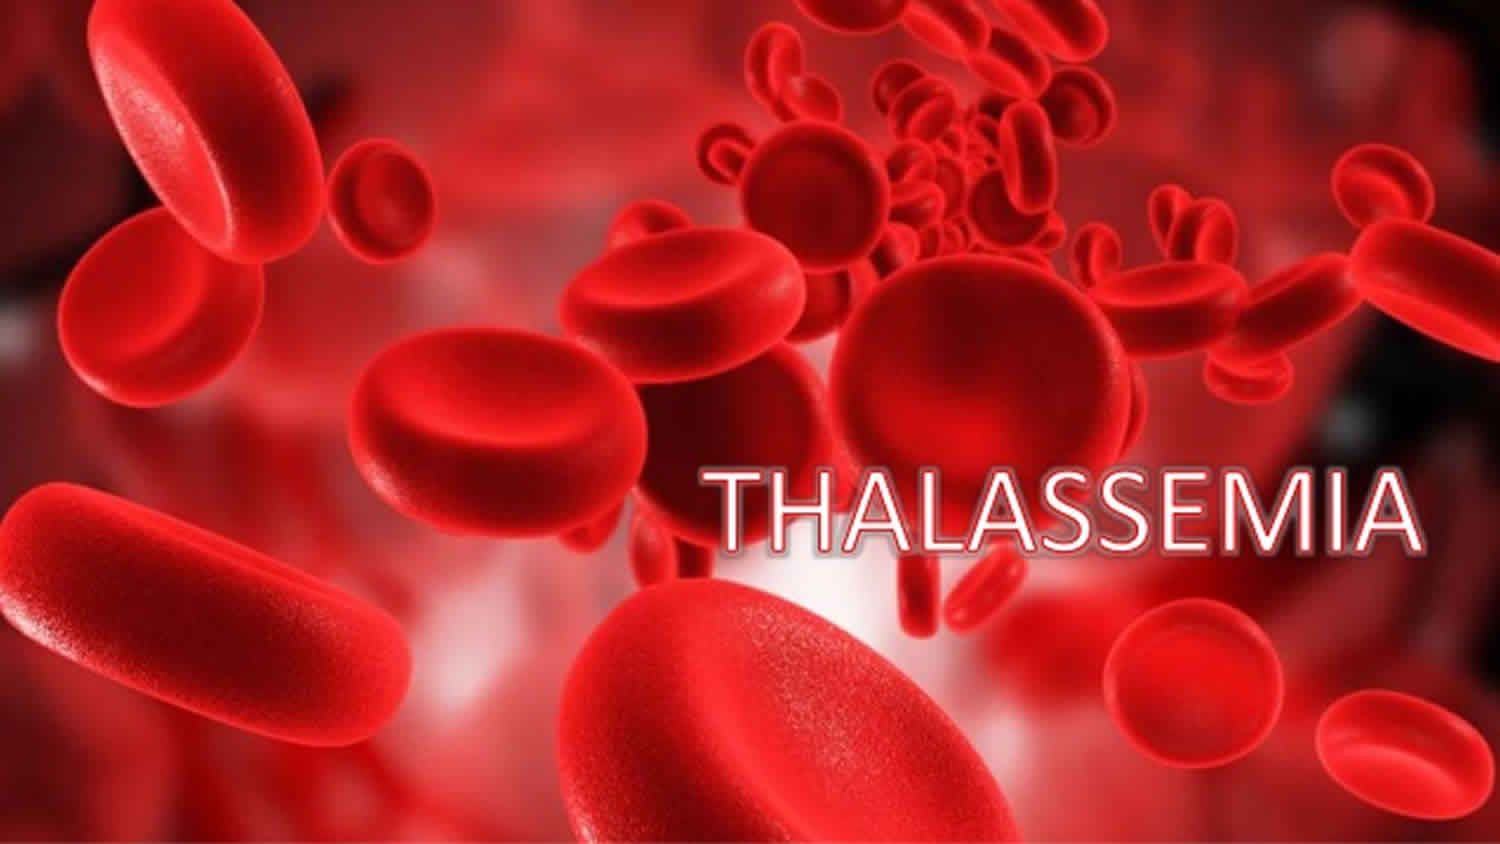 Adalah thalassemia Thalassemia